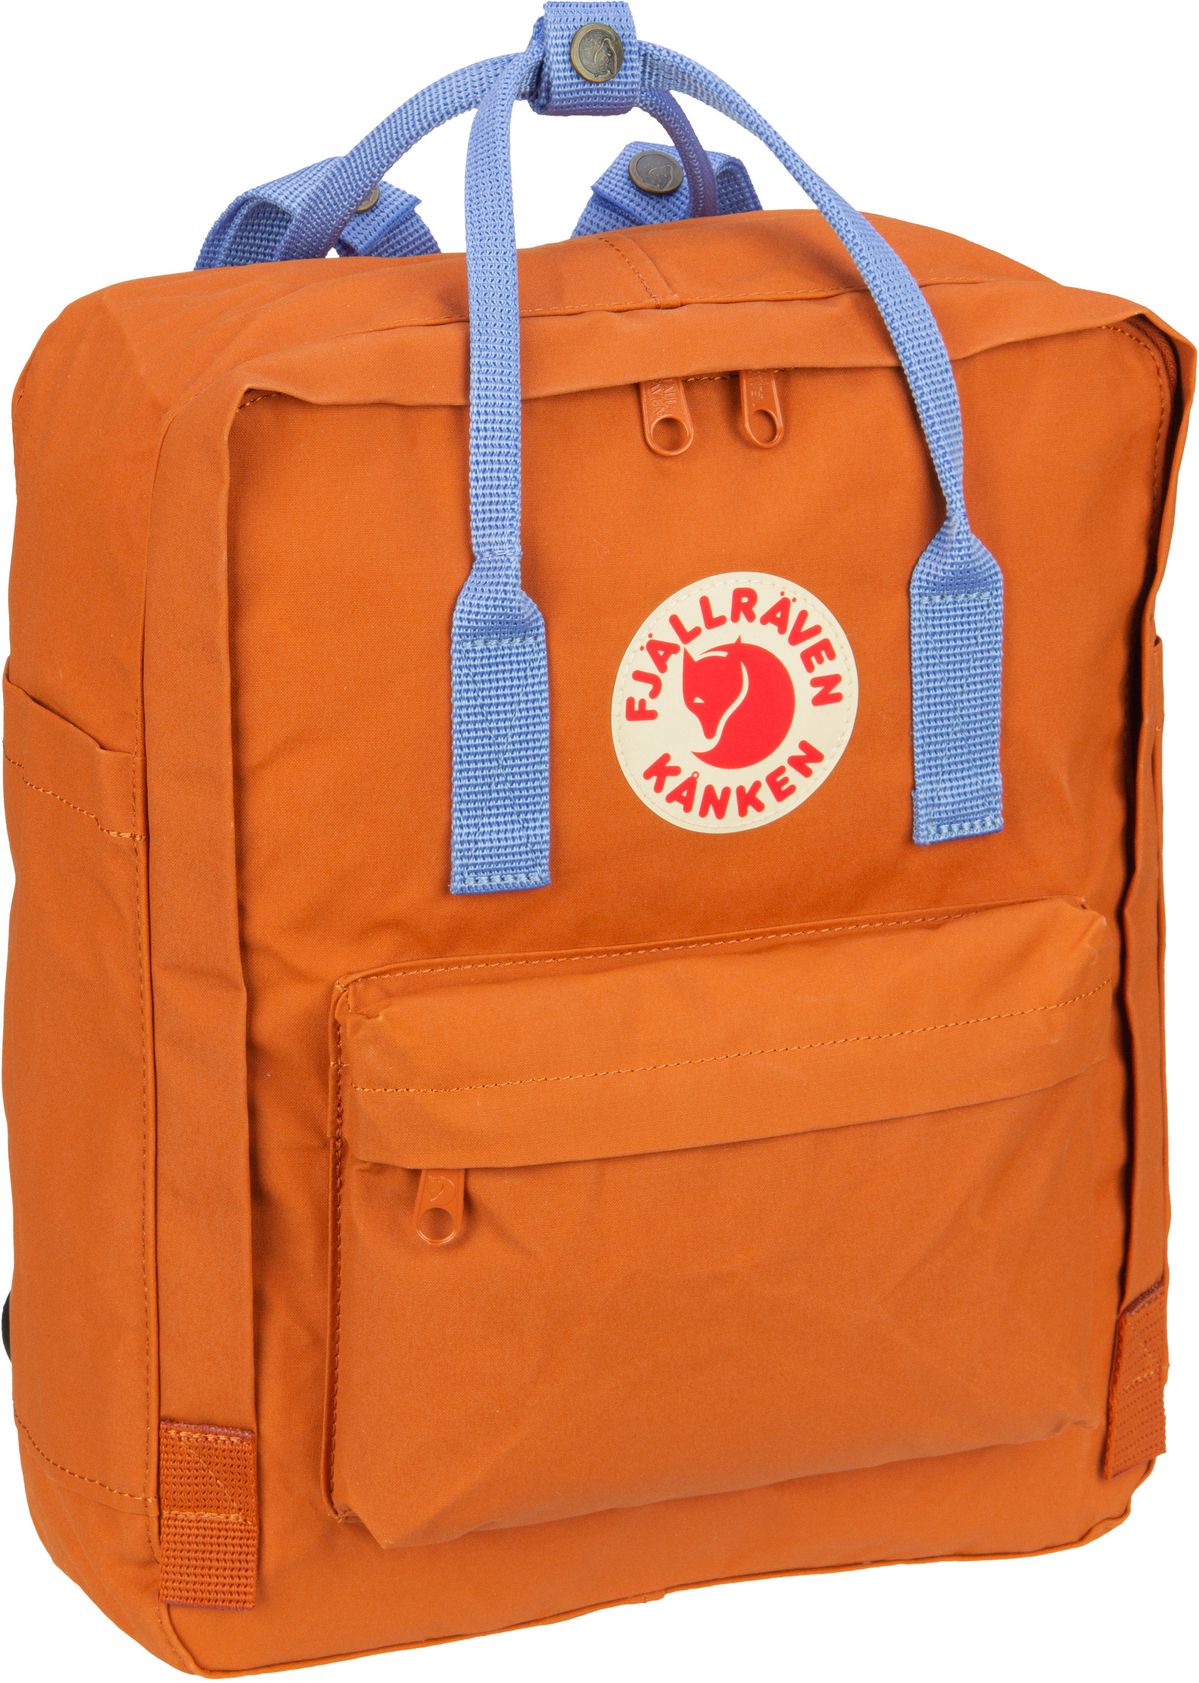 Fjällräven Kanken  in Orange (16 Liter), Rucksack / Backpack